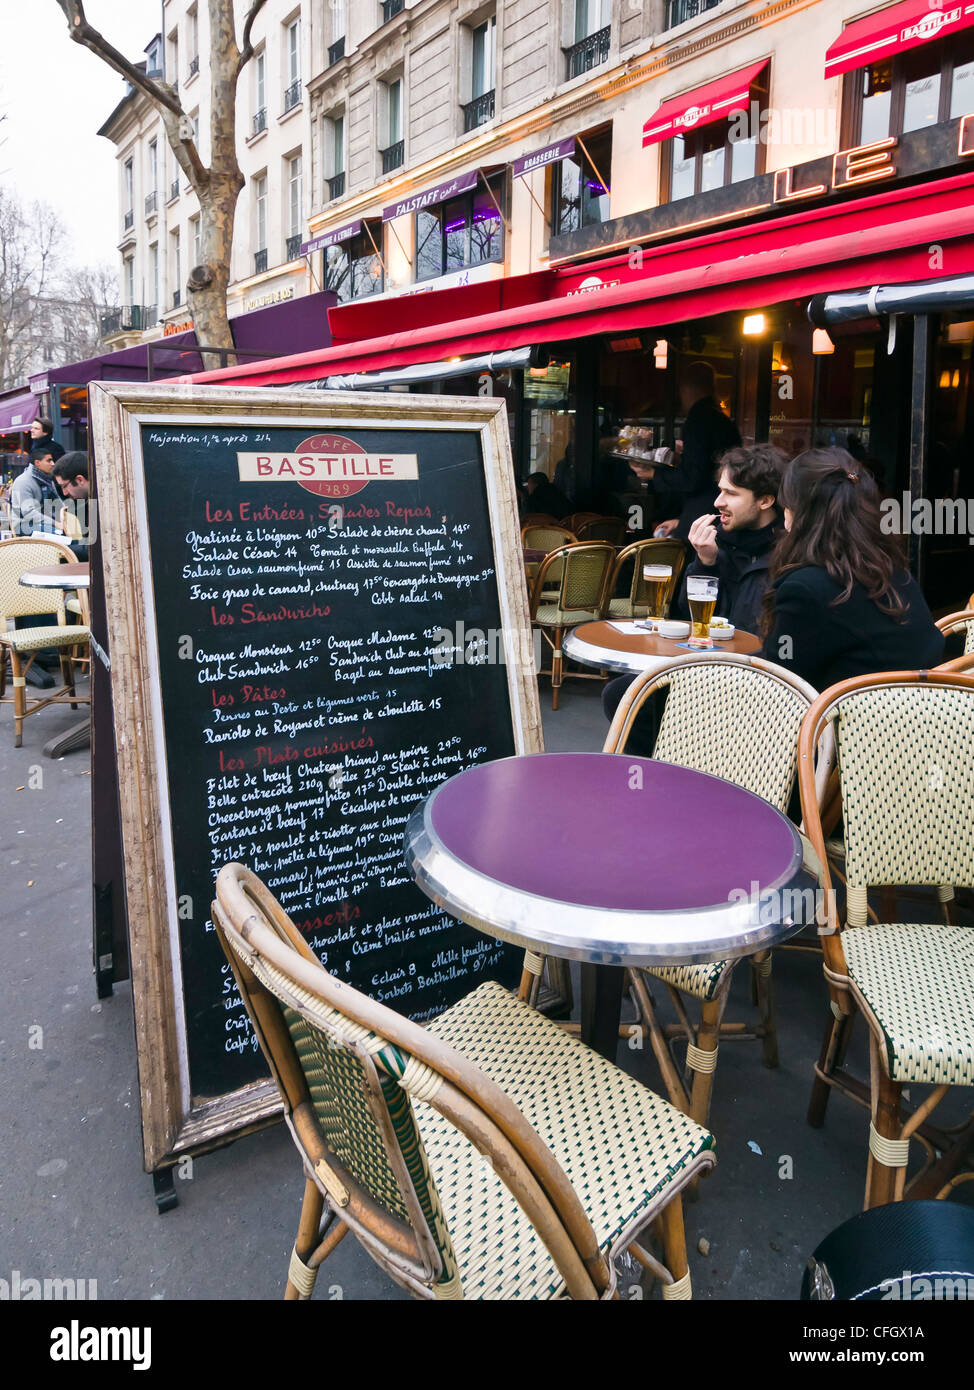 La gente disfruta de una bebida en la cafetería terraza - Bastille, París, Francia Foto de stock